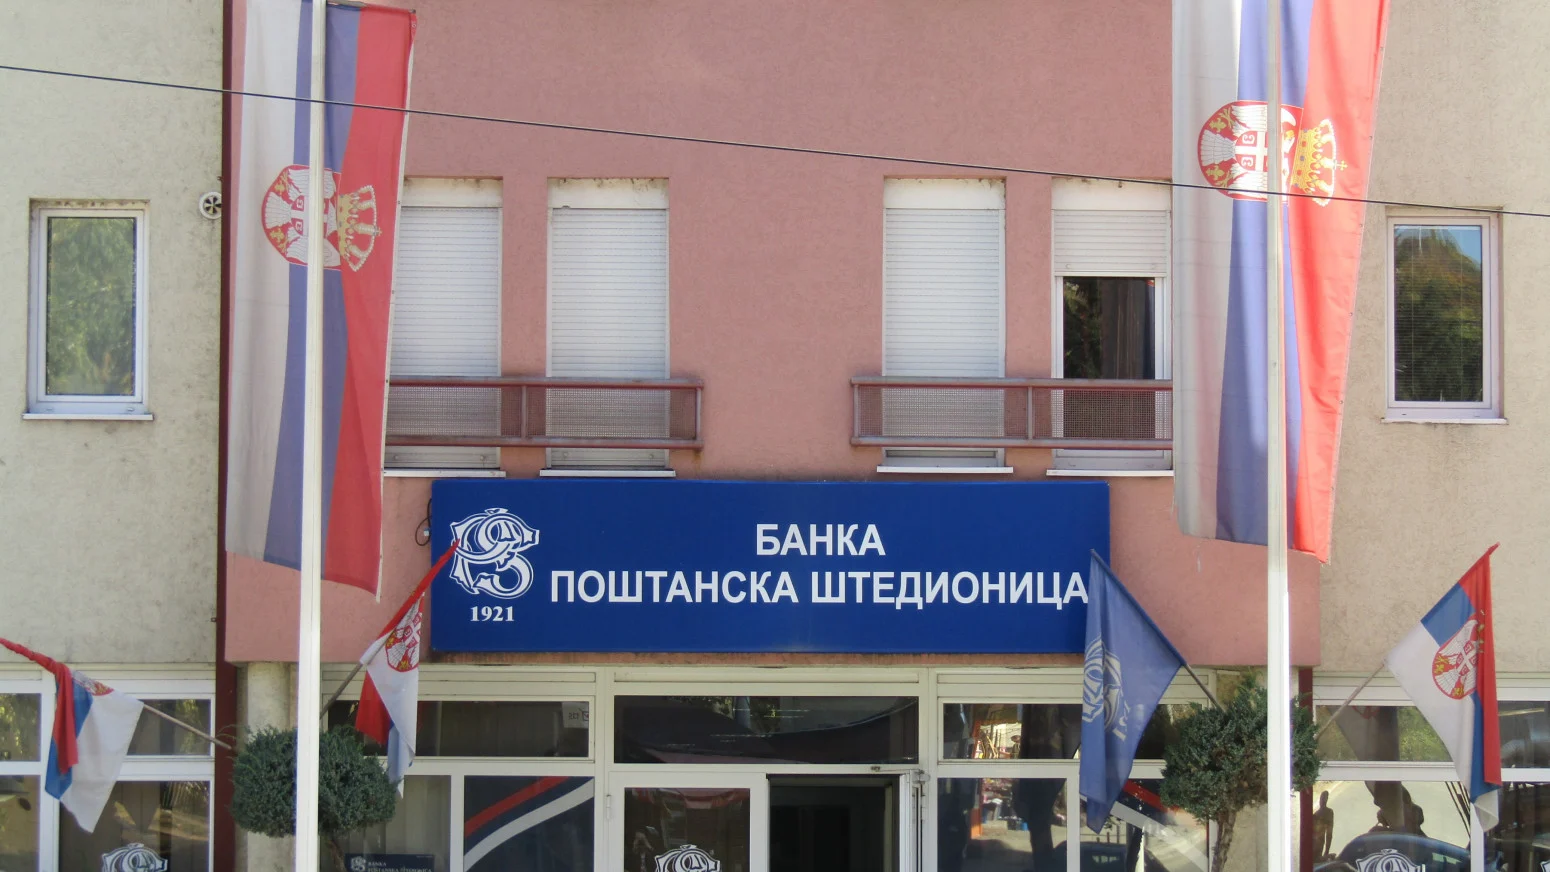 Kekić: Banka Poštanska štedionica na Kosovu ima pet ekspozitura, uvek ćemo biti uz naš narod